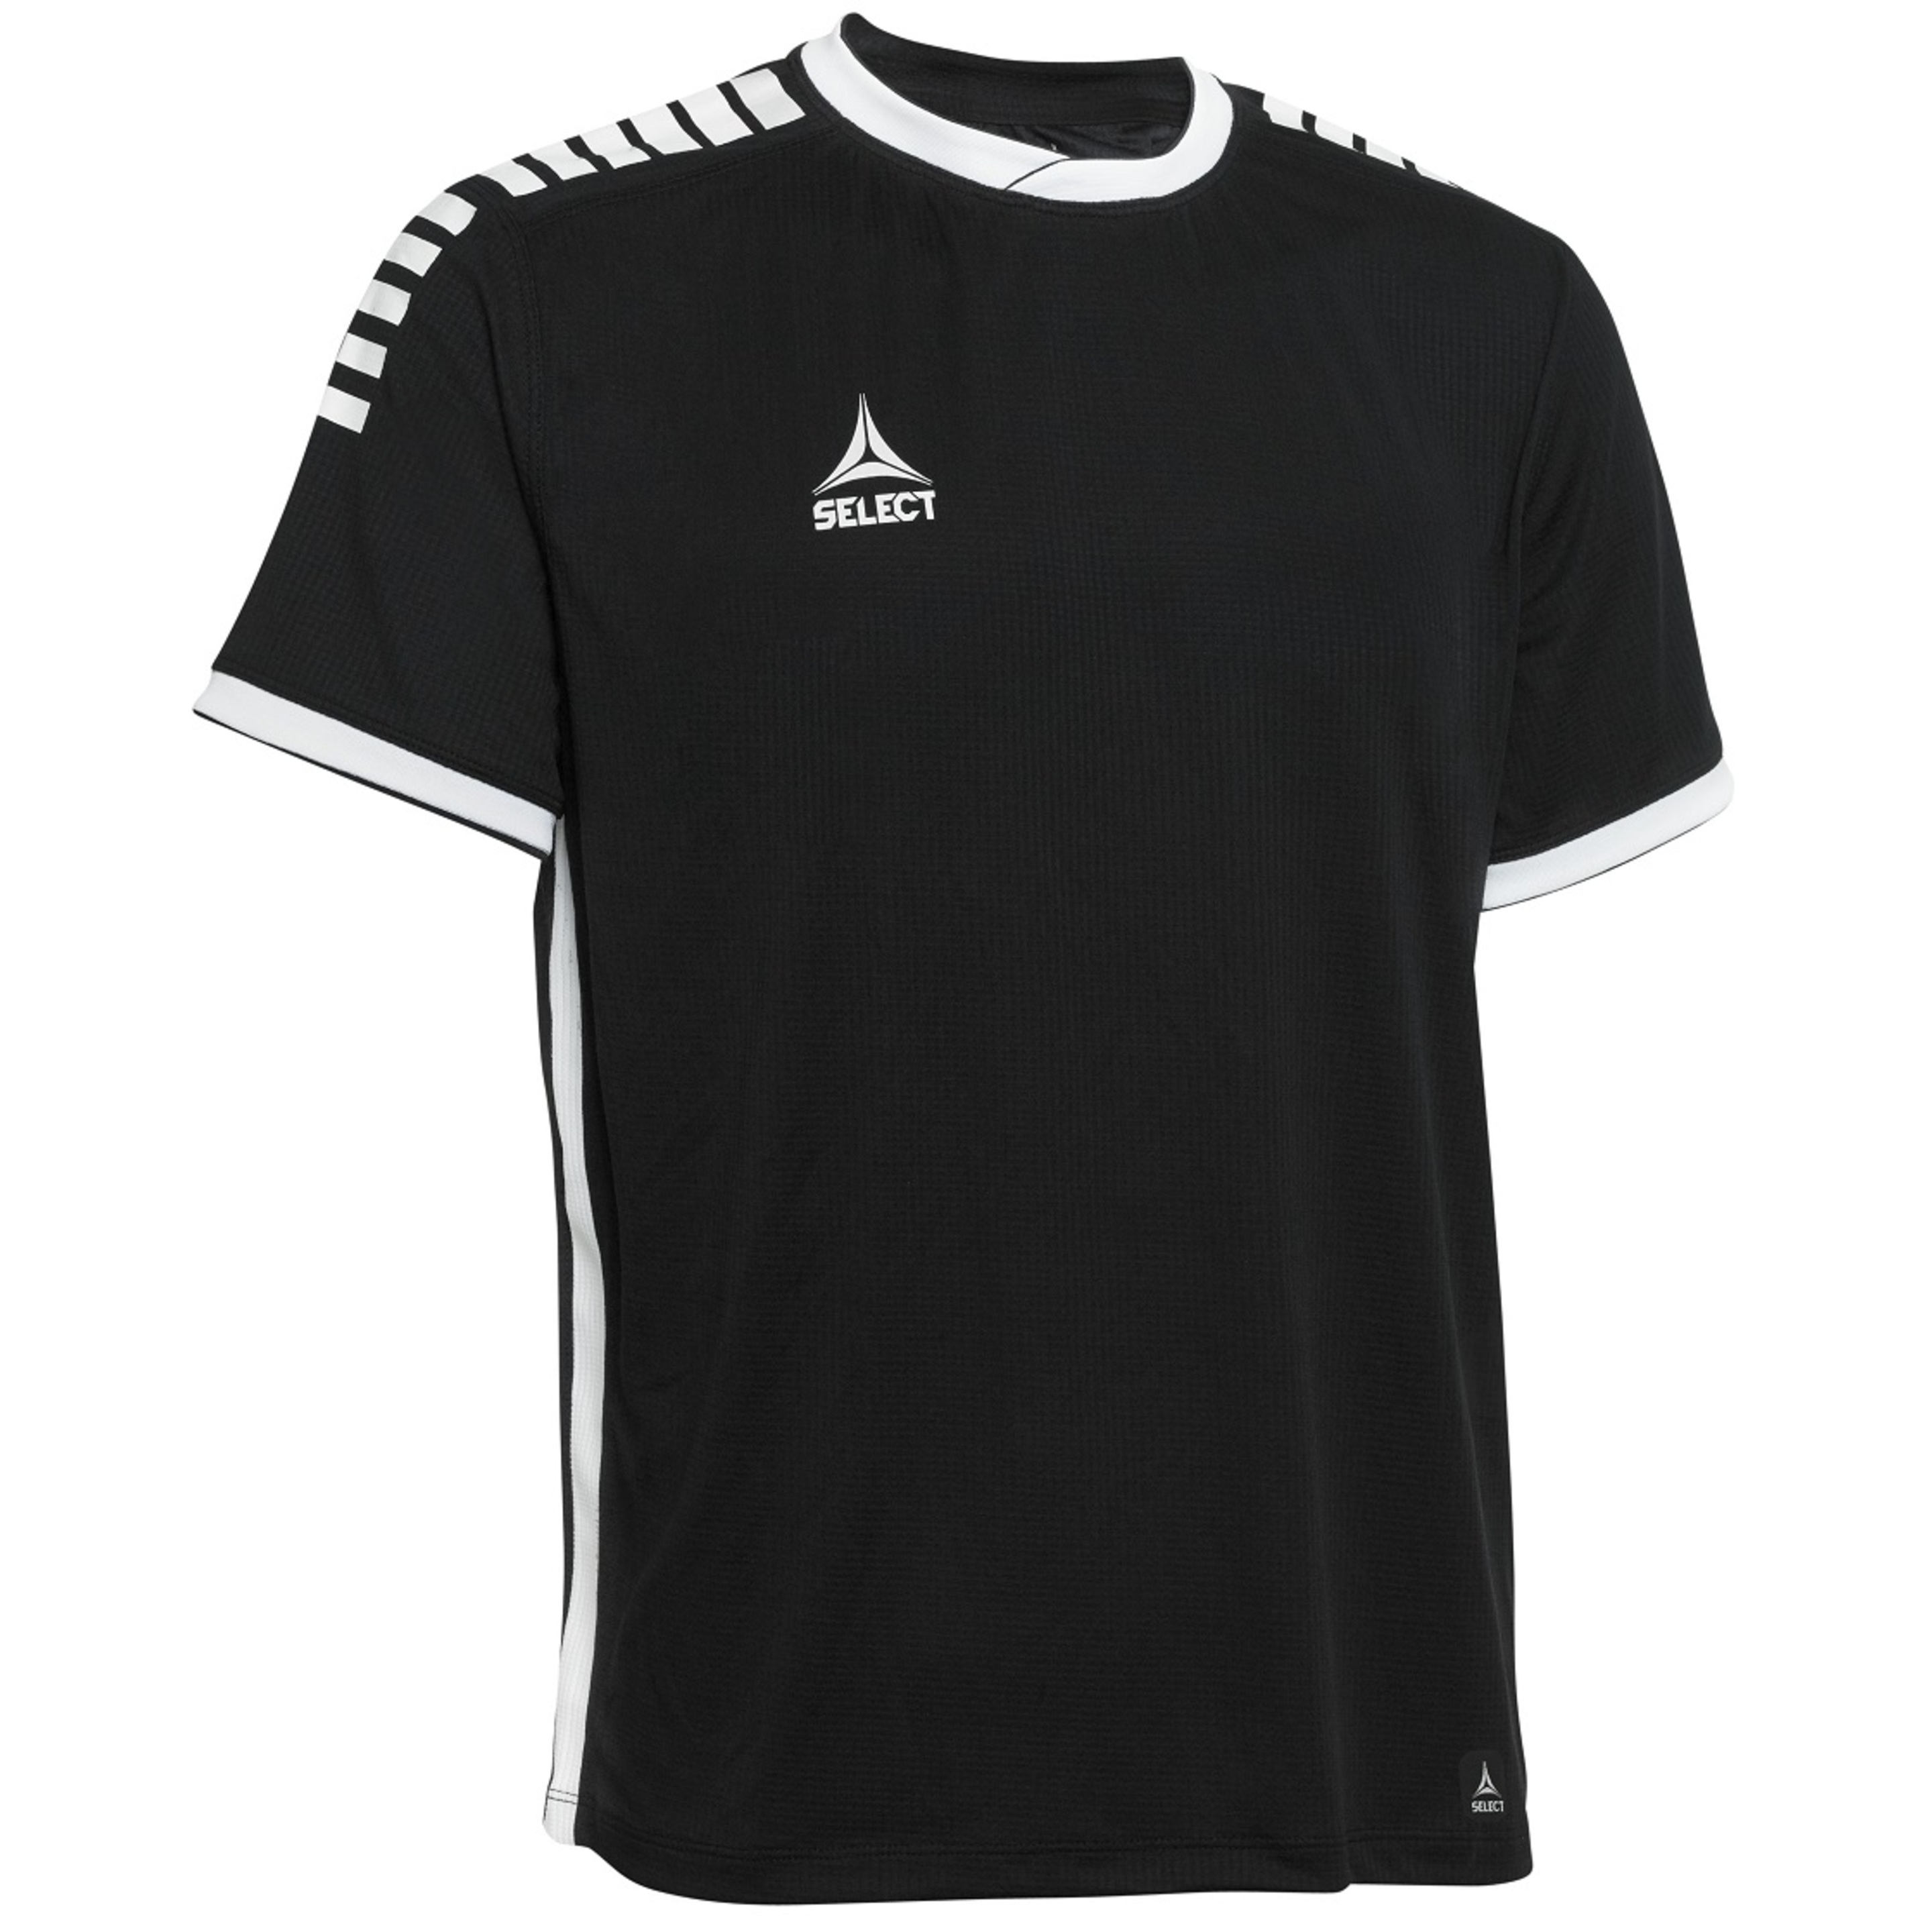 Camiseta Mónaco Select - negro - 